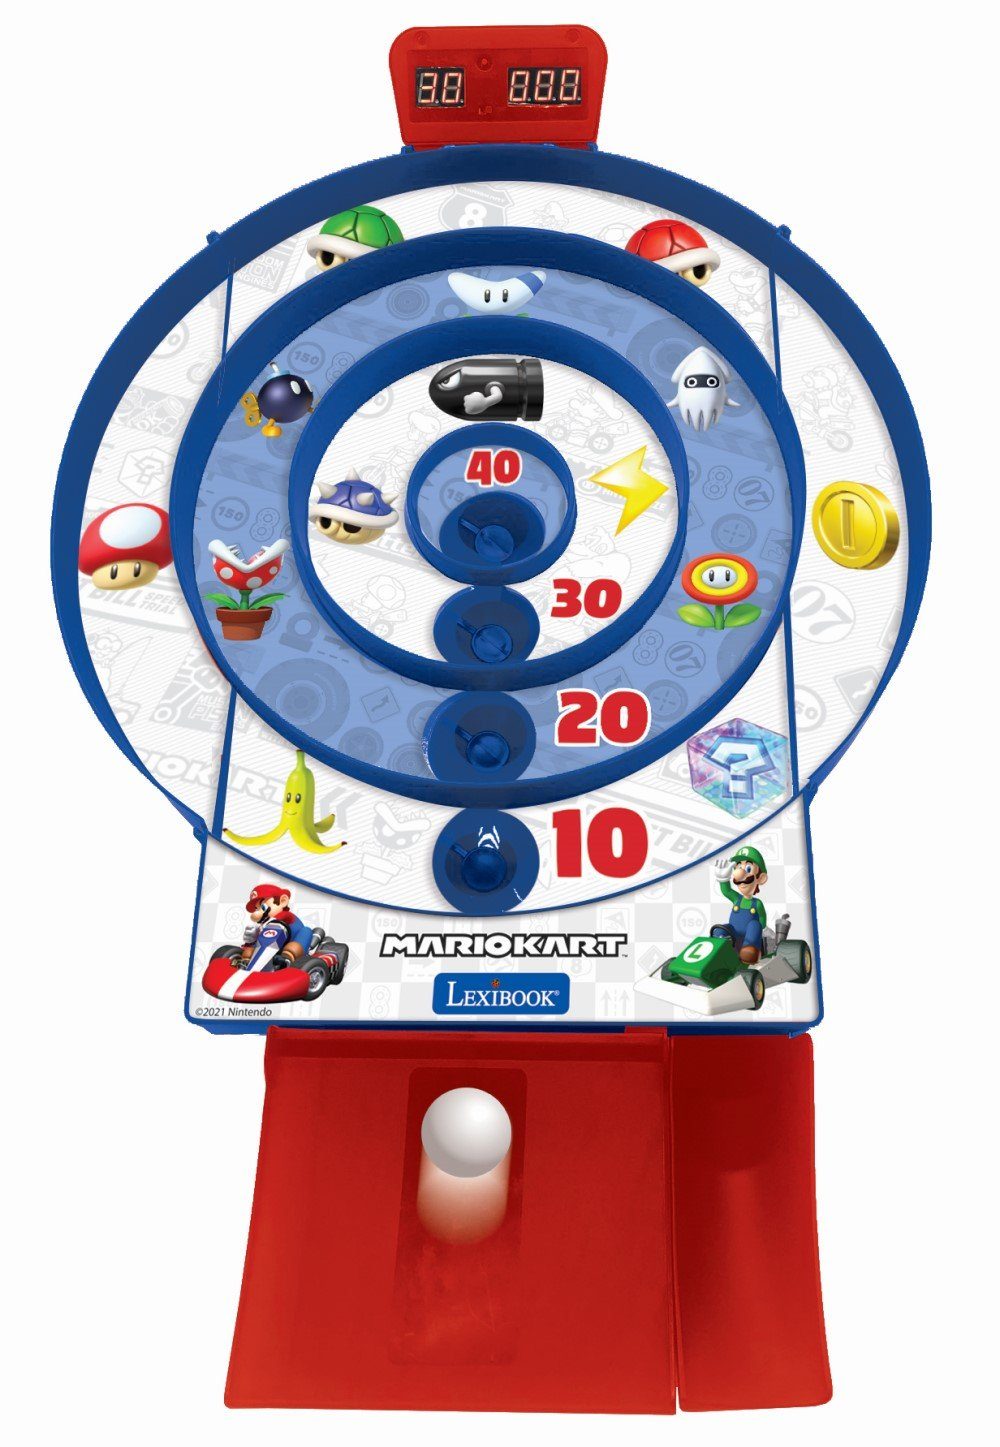 Zielscheiben-Spiel Elektronisches Mario 2 Spiel, Lexibook® Bälle Kart LCD-Bildschirm